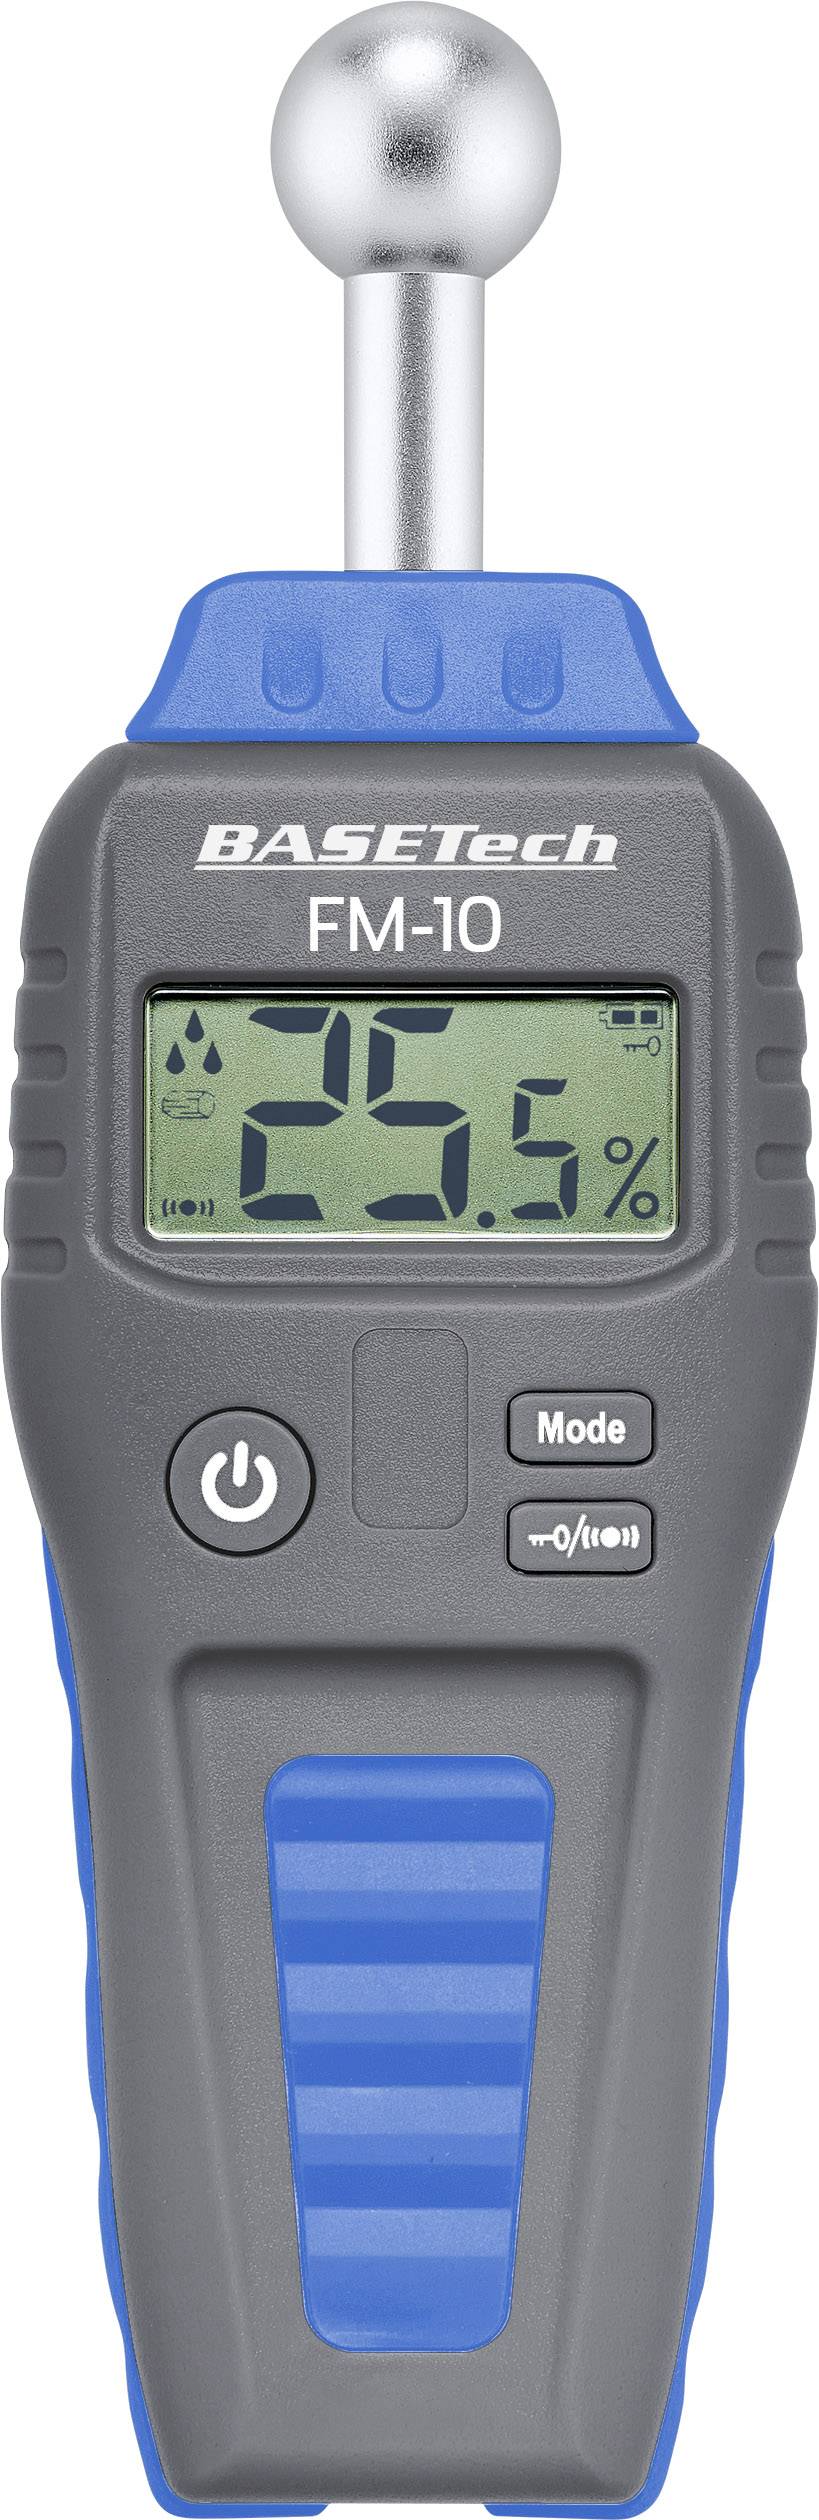 BASETECH FM-10 Materialfeuchtemessgerät